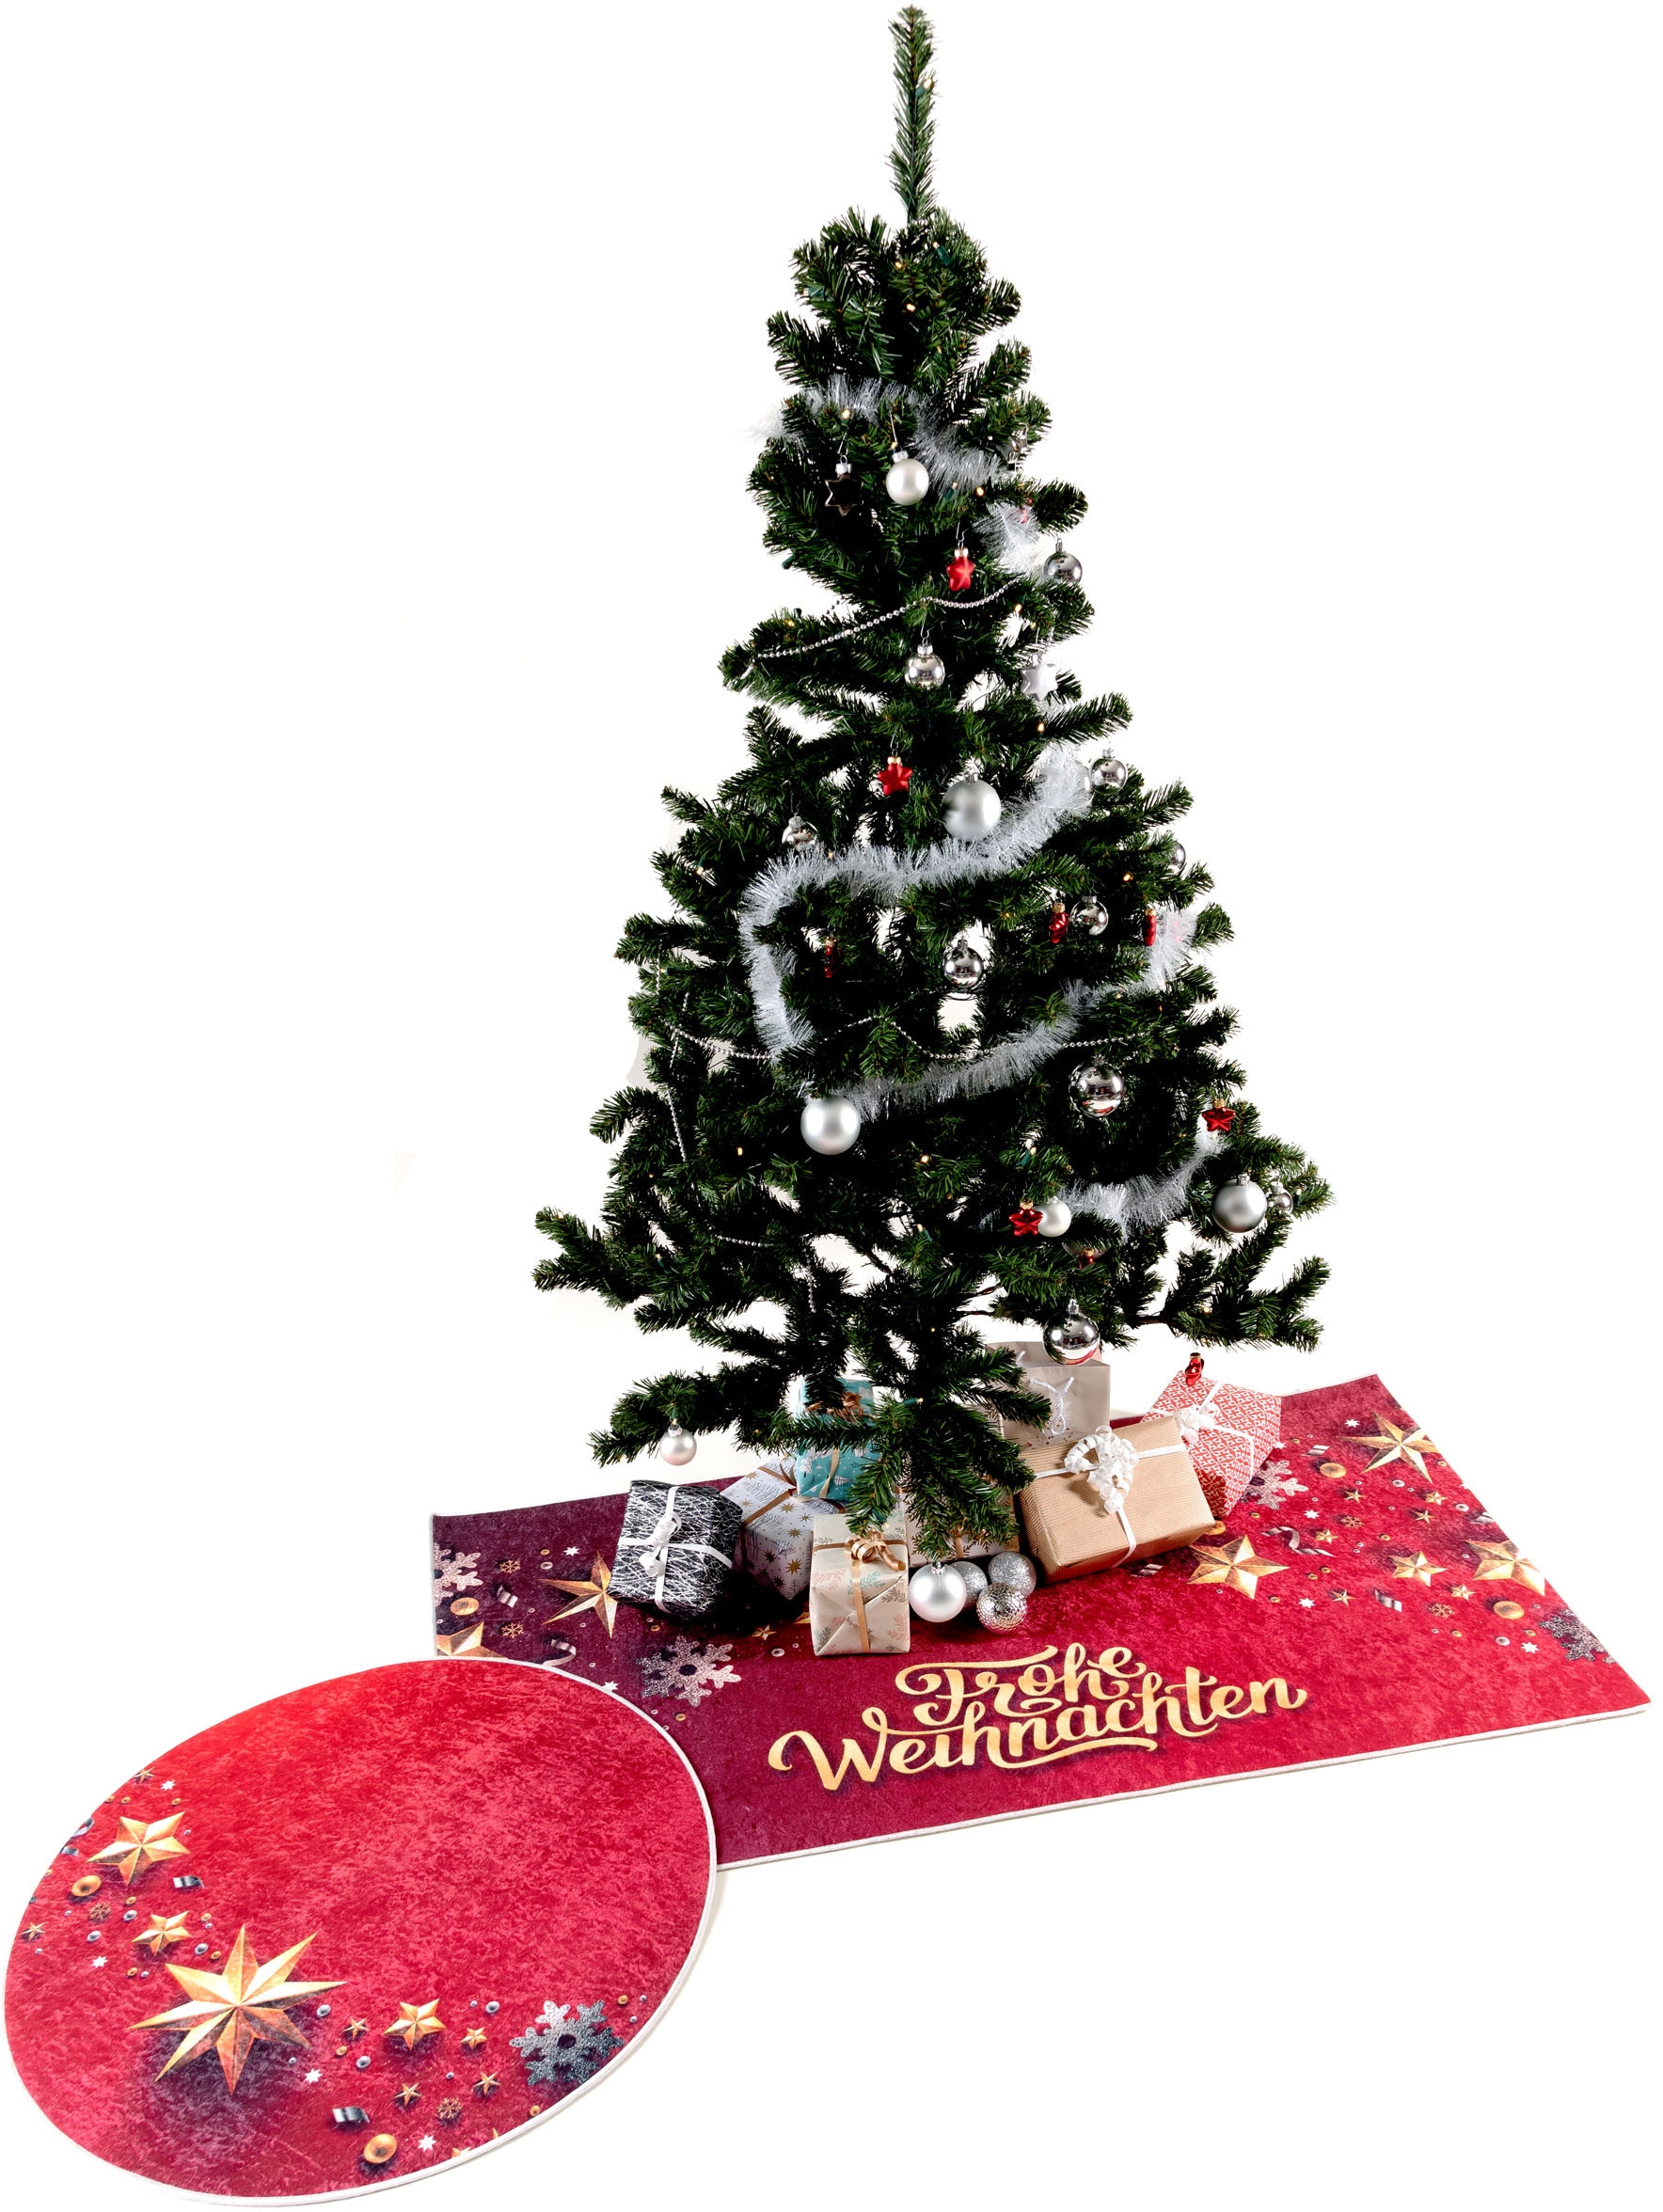 1224«, rechteckig, Teppich günstig waschbar, Weihnachtsbaum Sehrazat Weihnachten, Unterlage »Christmas kaufen